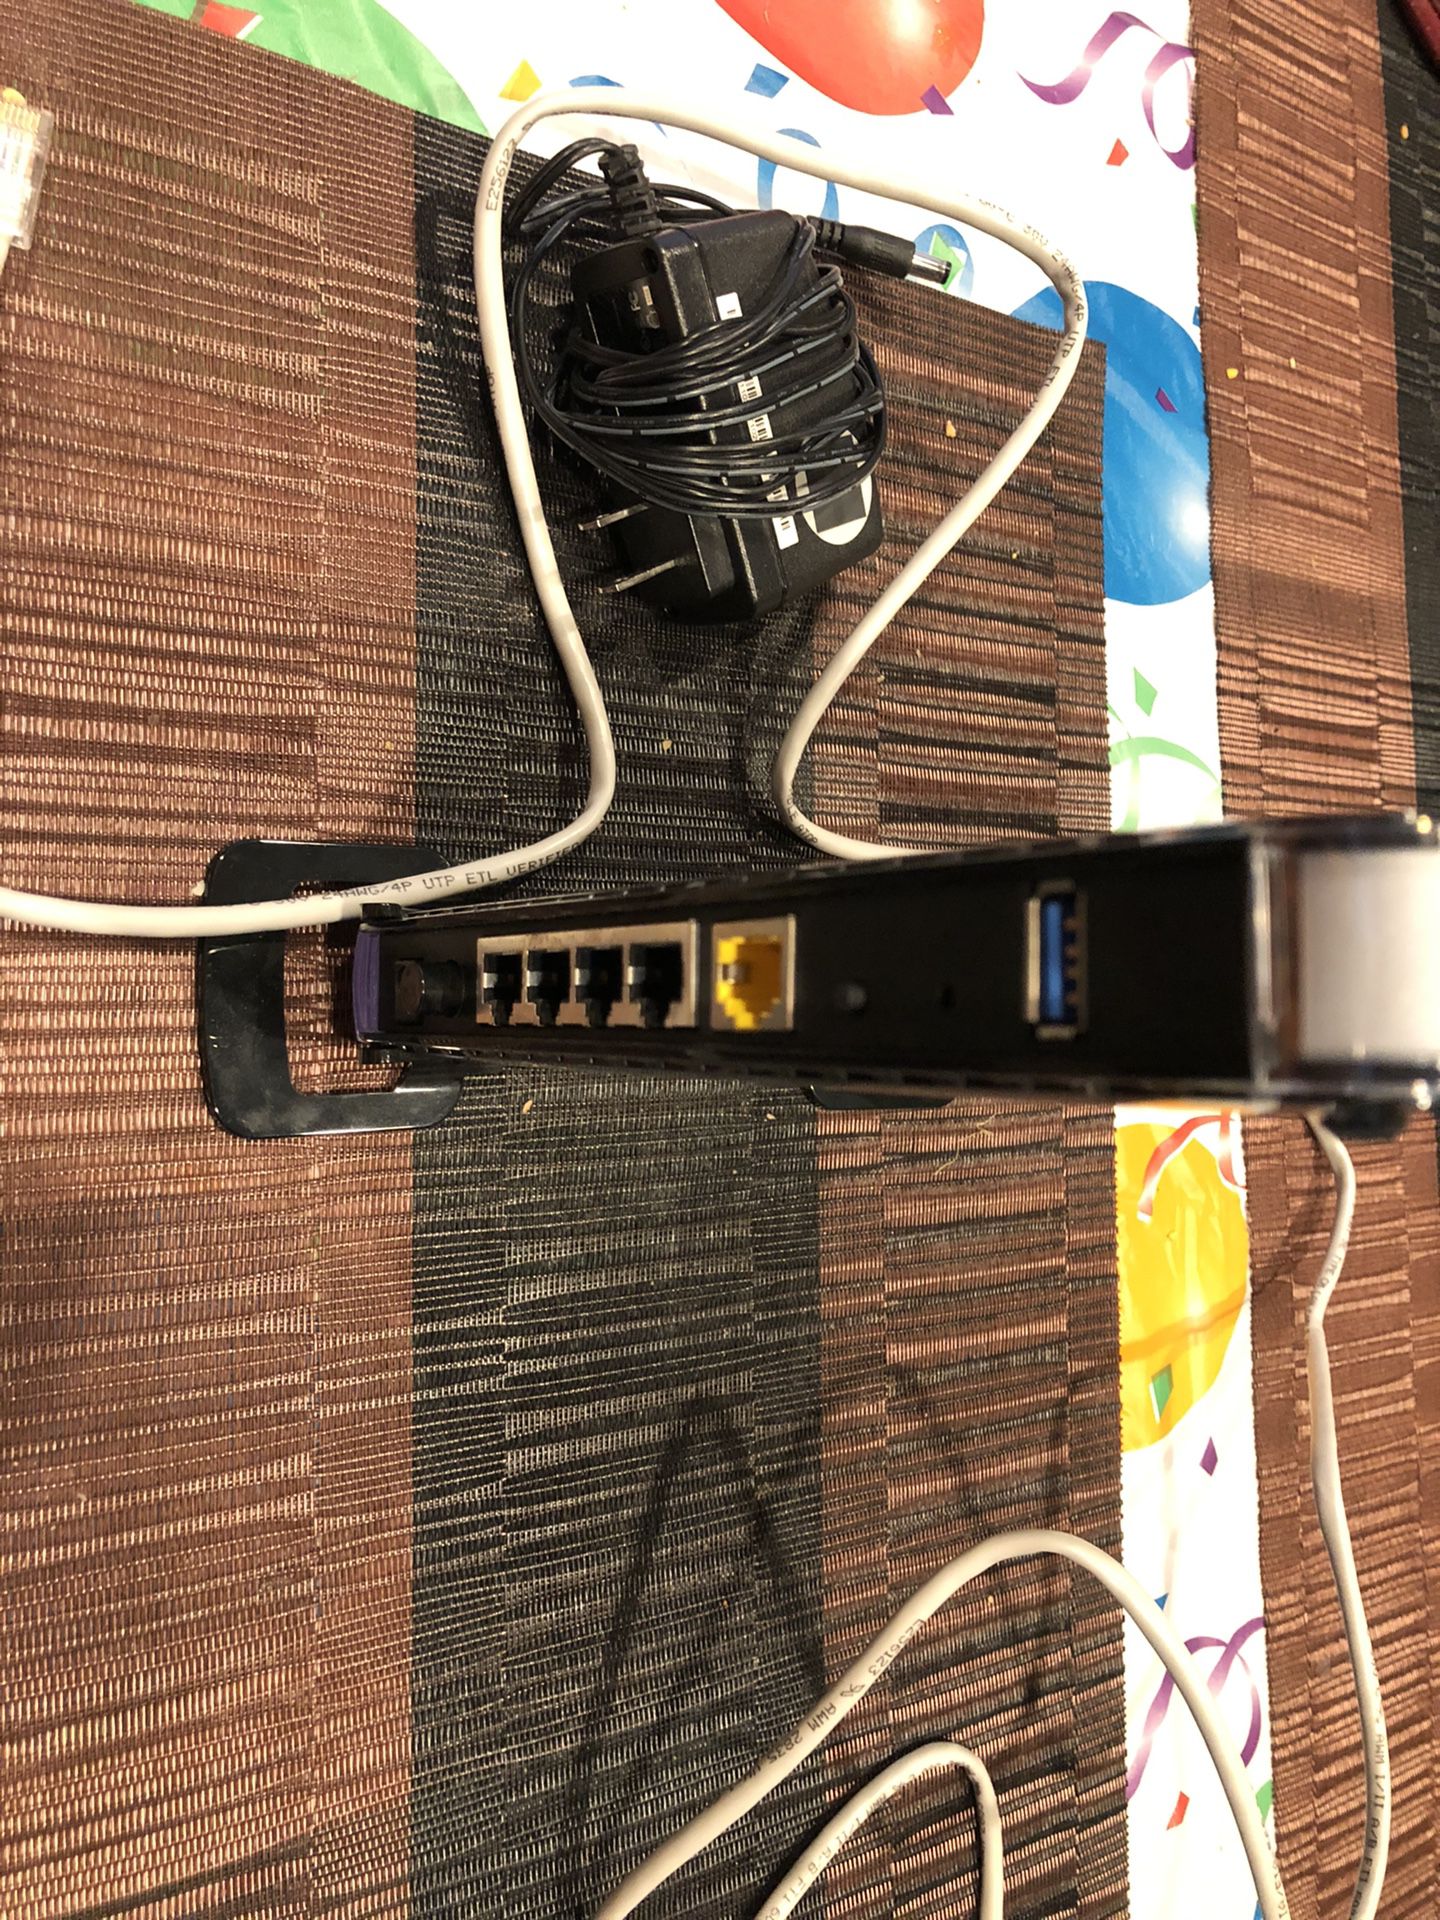 Netgear N600 dual band router